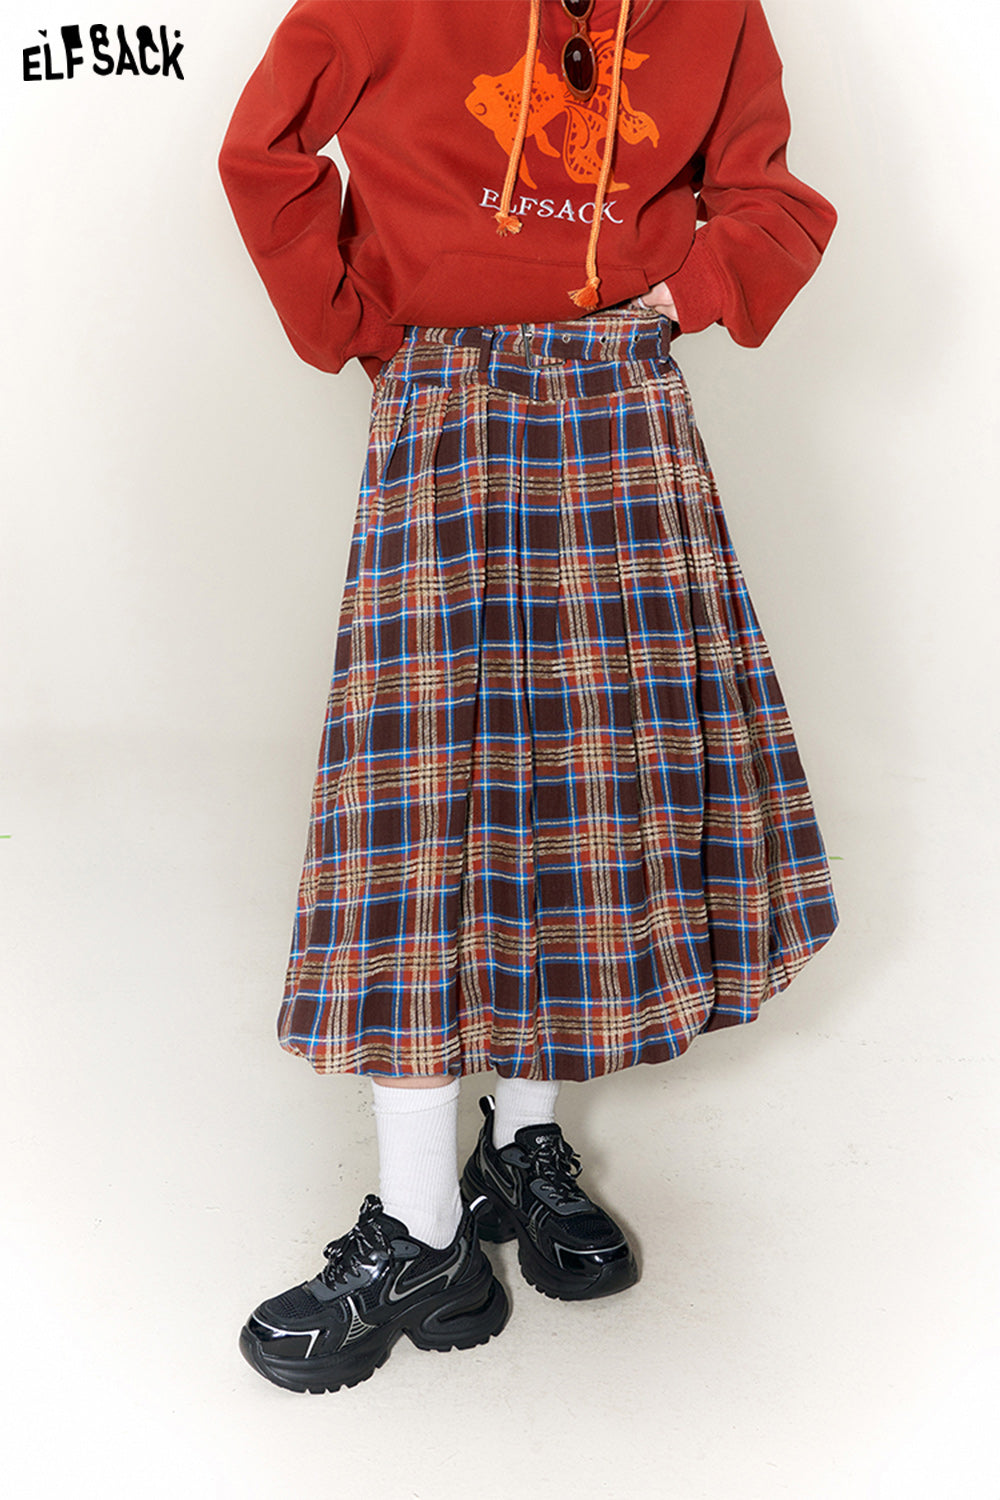 ELFSACK Checkered Pleated Skirt Woman 2023 Winter New Chinese Style Designer Skirt